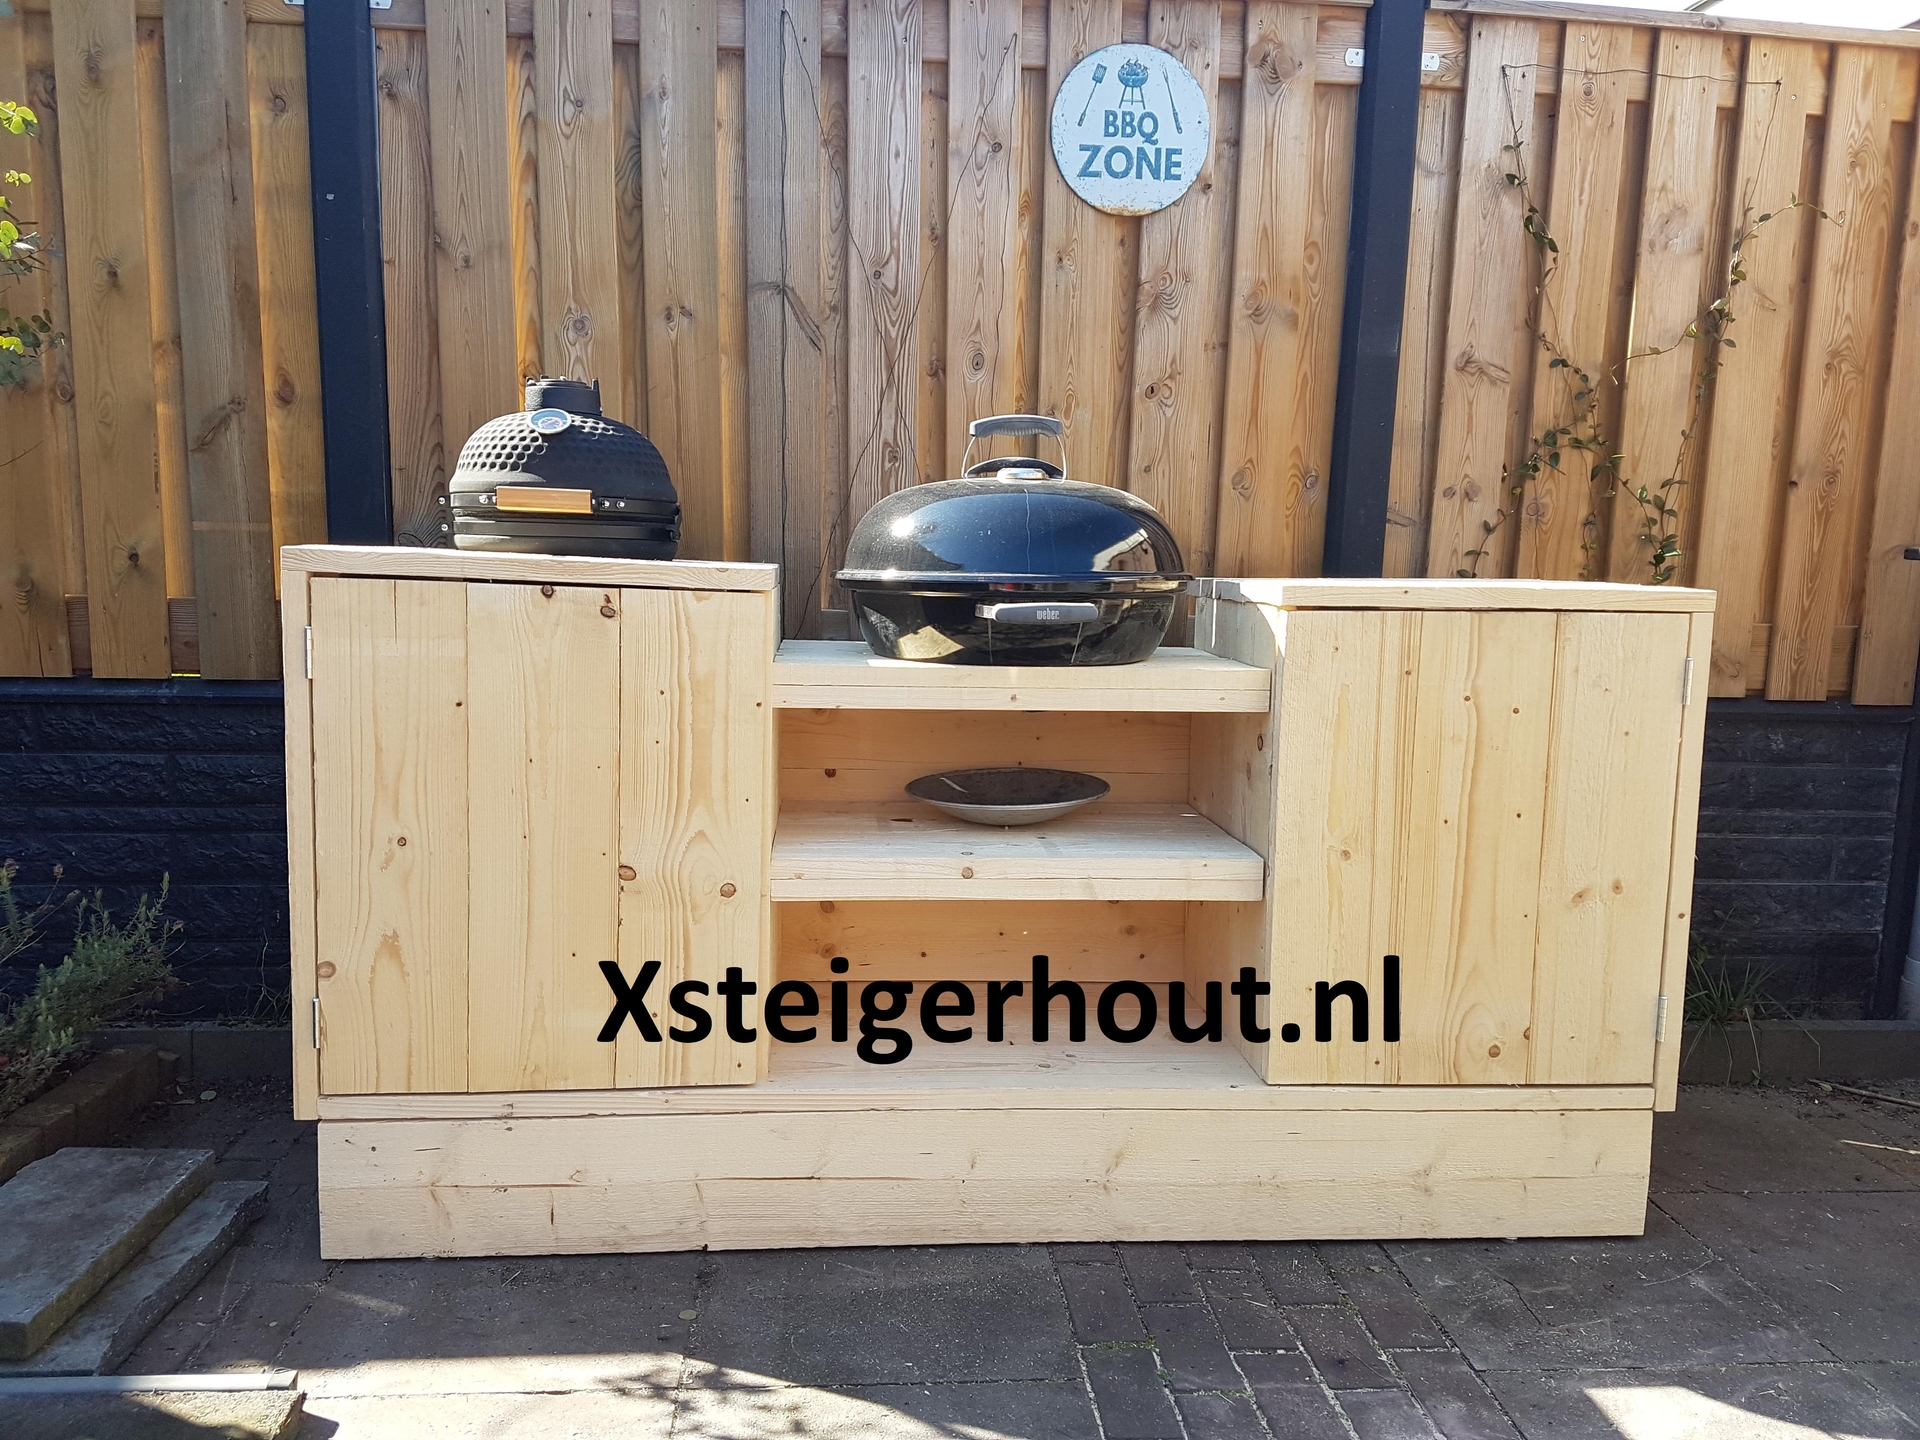 Vreemdeling Luik Ik was verrast Zelf gemaakte steigerhout bbq meubels buitenkeukens - xsteigerhout